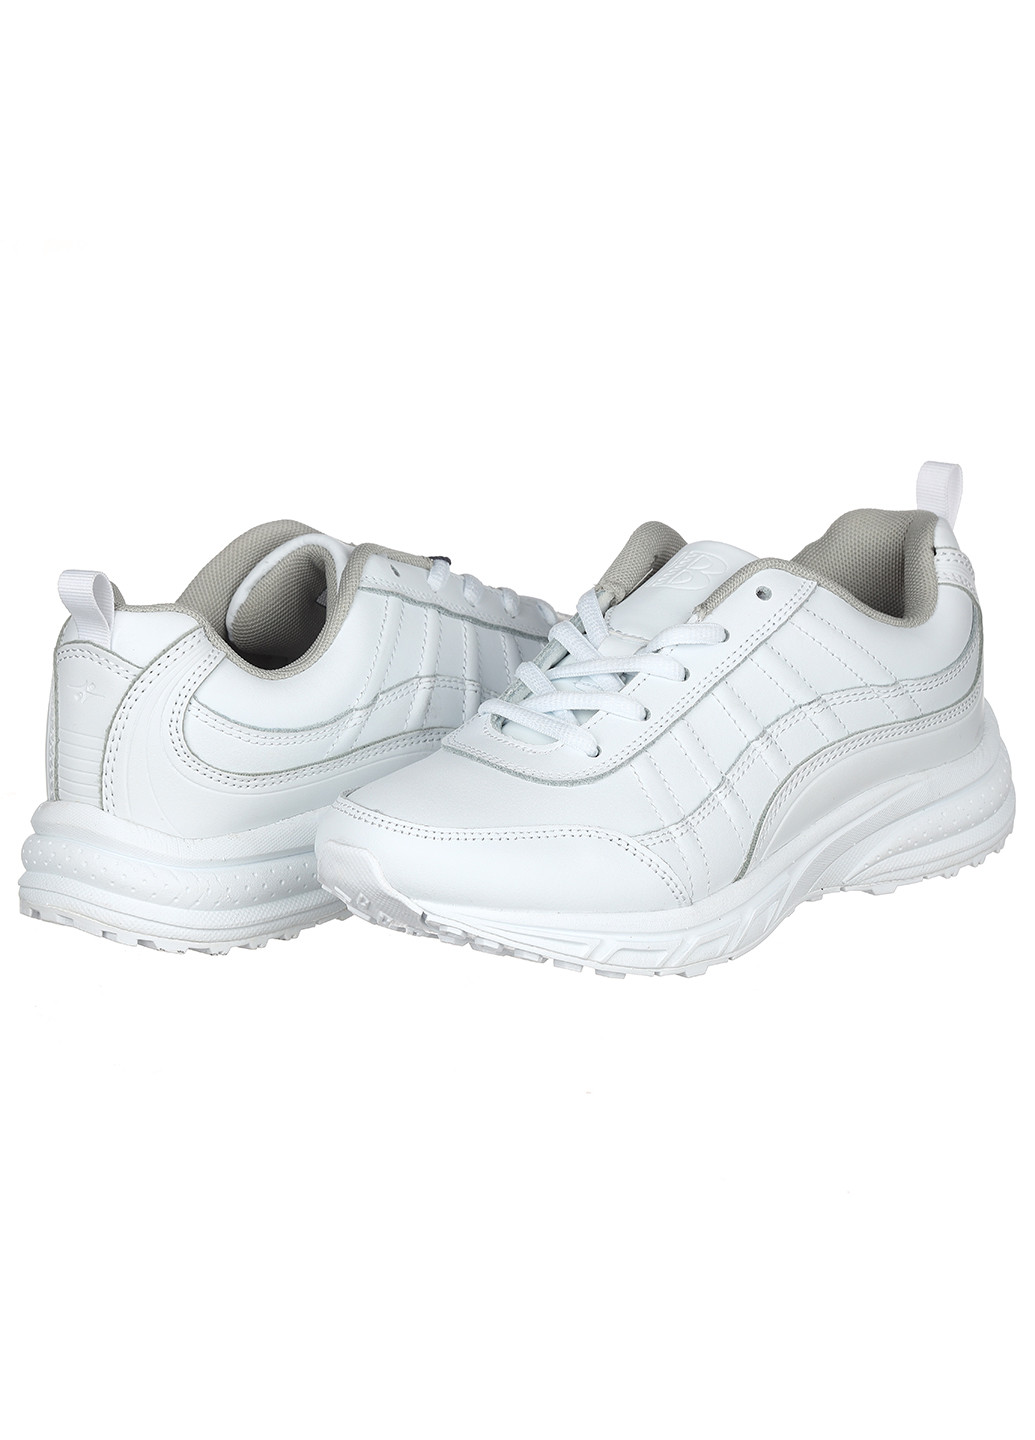 Білі осінні жіночі кросівки 739а-2 Bona